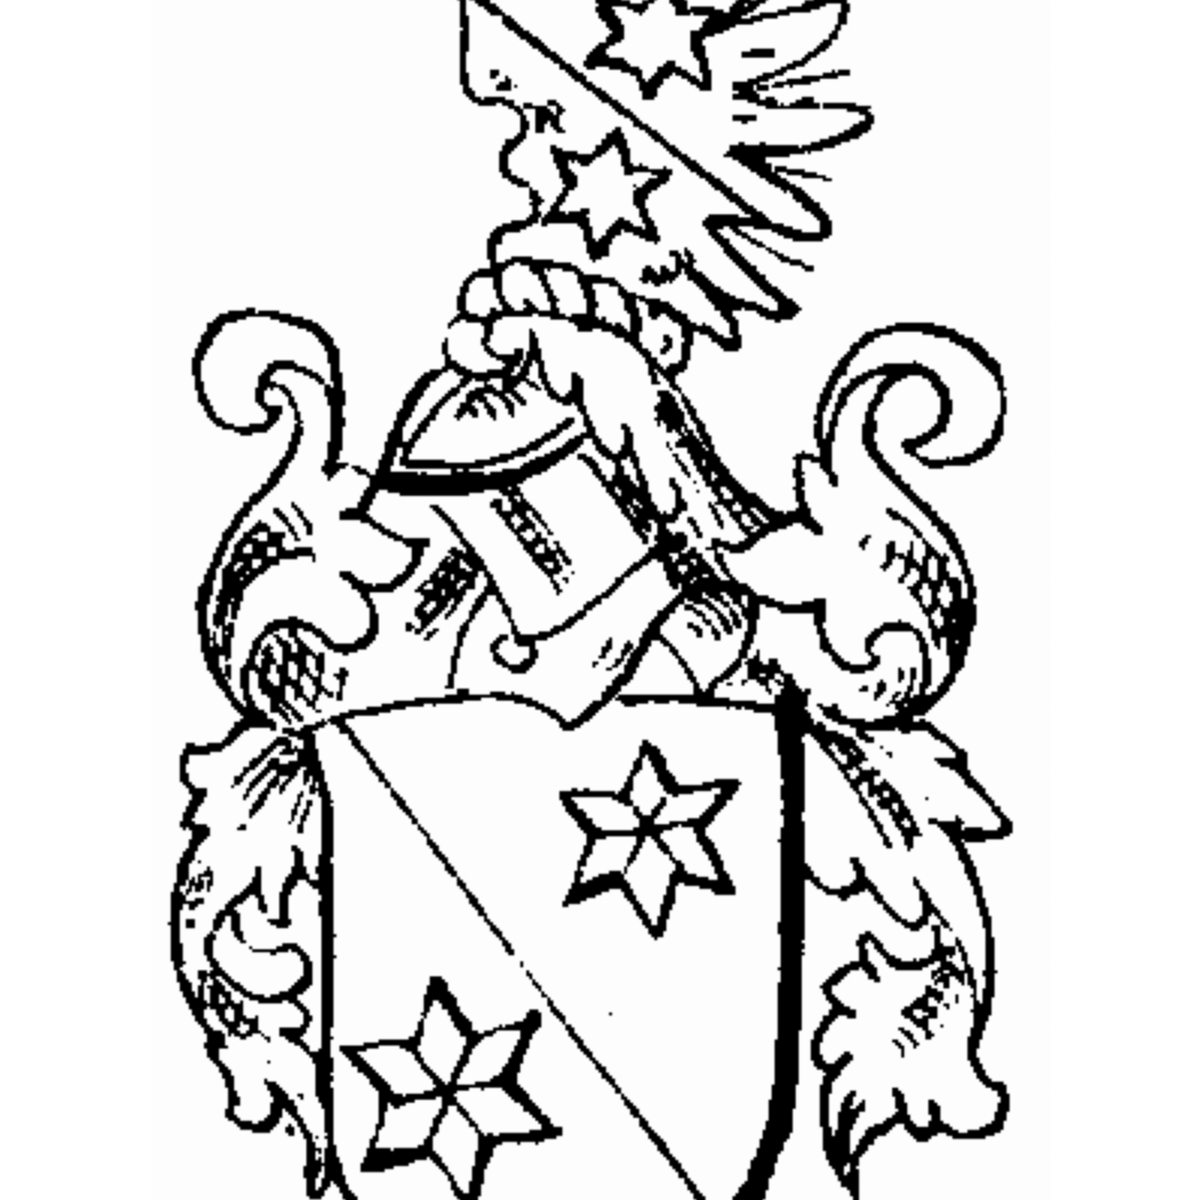 Coat of arms of family Terkuhlen